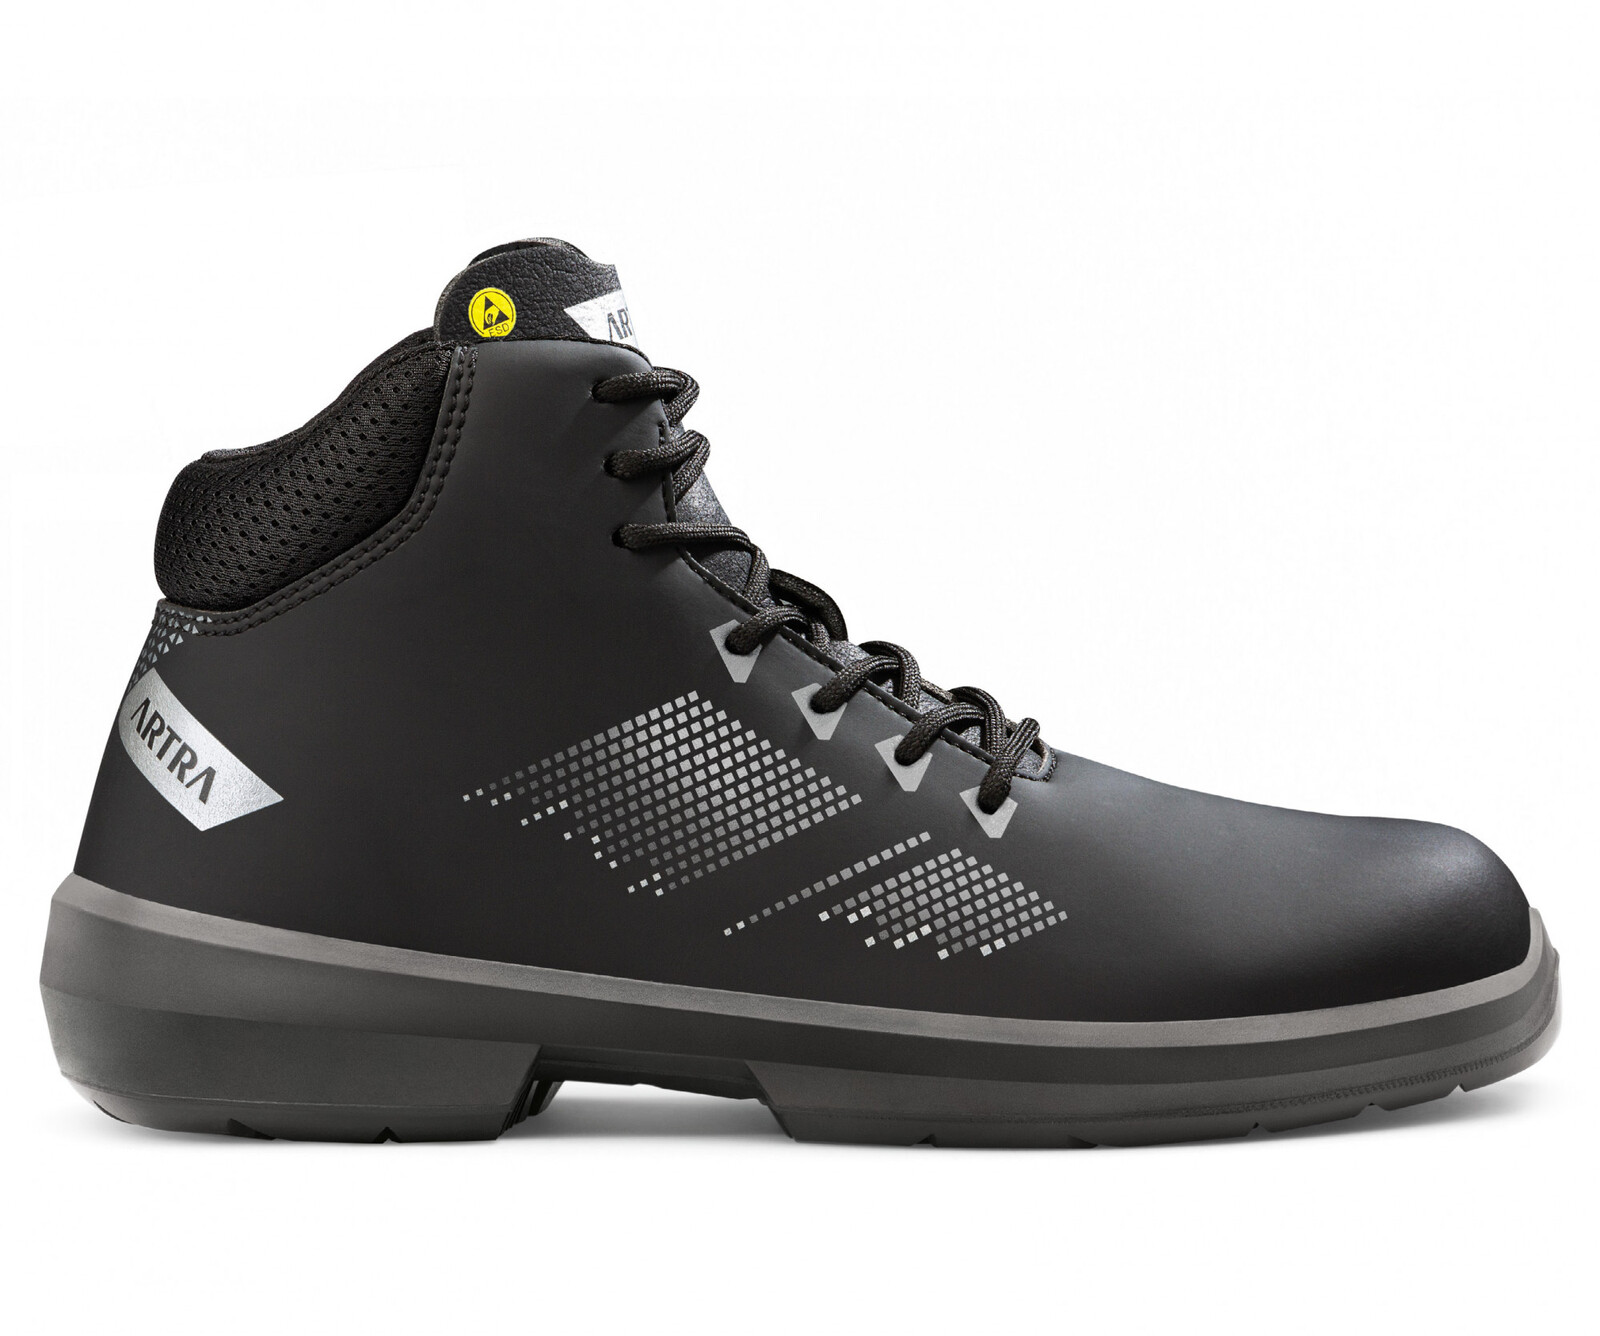 Zimná bezpečnostná členková obuv Artra Arrival 855 676560 S3 CI SRC ESD MF - veľkosť: 47, farba: čierna/sivá